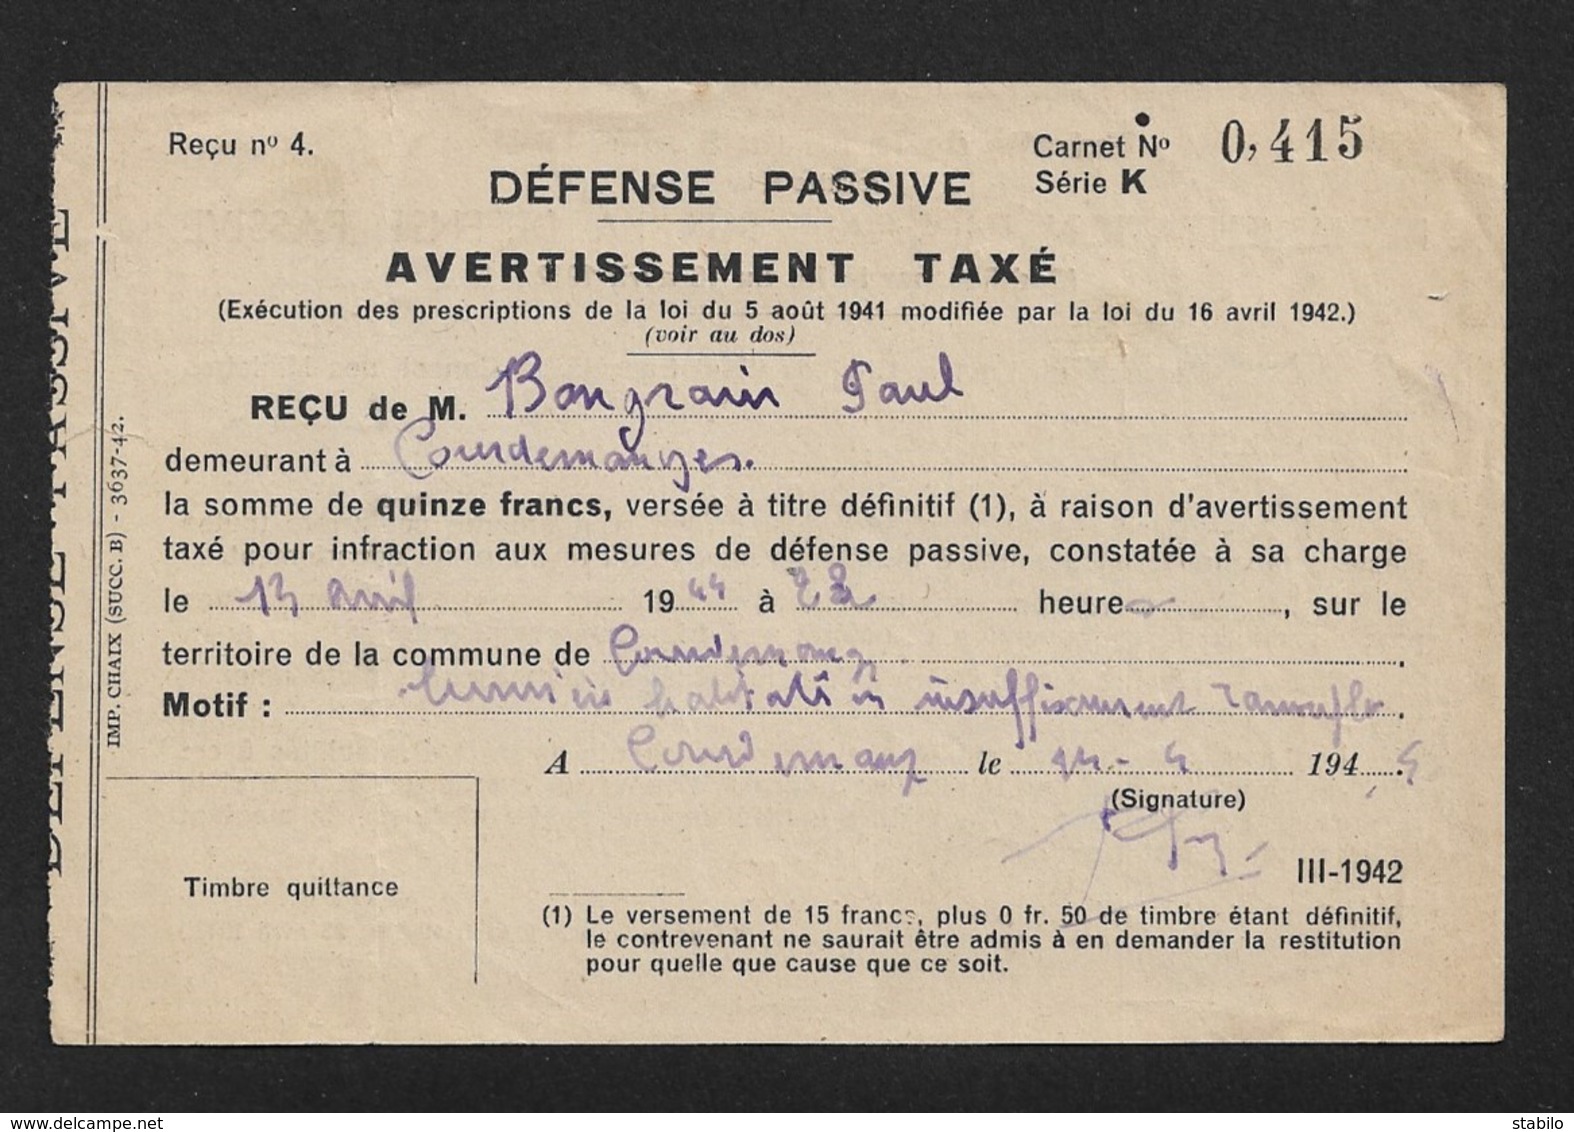 COURDEMANGES (MARNE) - AVERTISSEMENT TAXE DE DEFENSE PASSIVE A M. BONGRAIN PAUL LE 13 AVRIL 1944 A 22H - FORMAT 13.5 X 9 - Documents Historiques